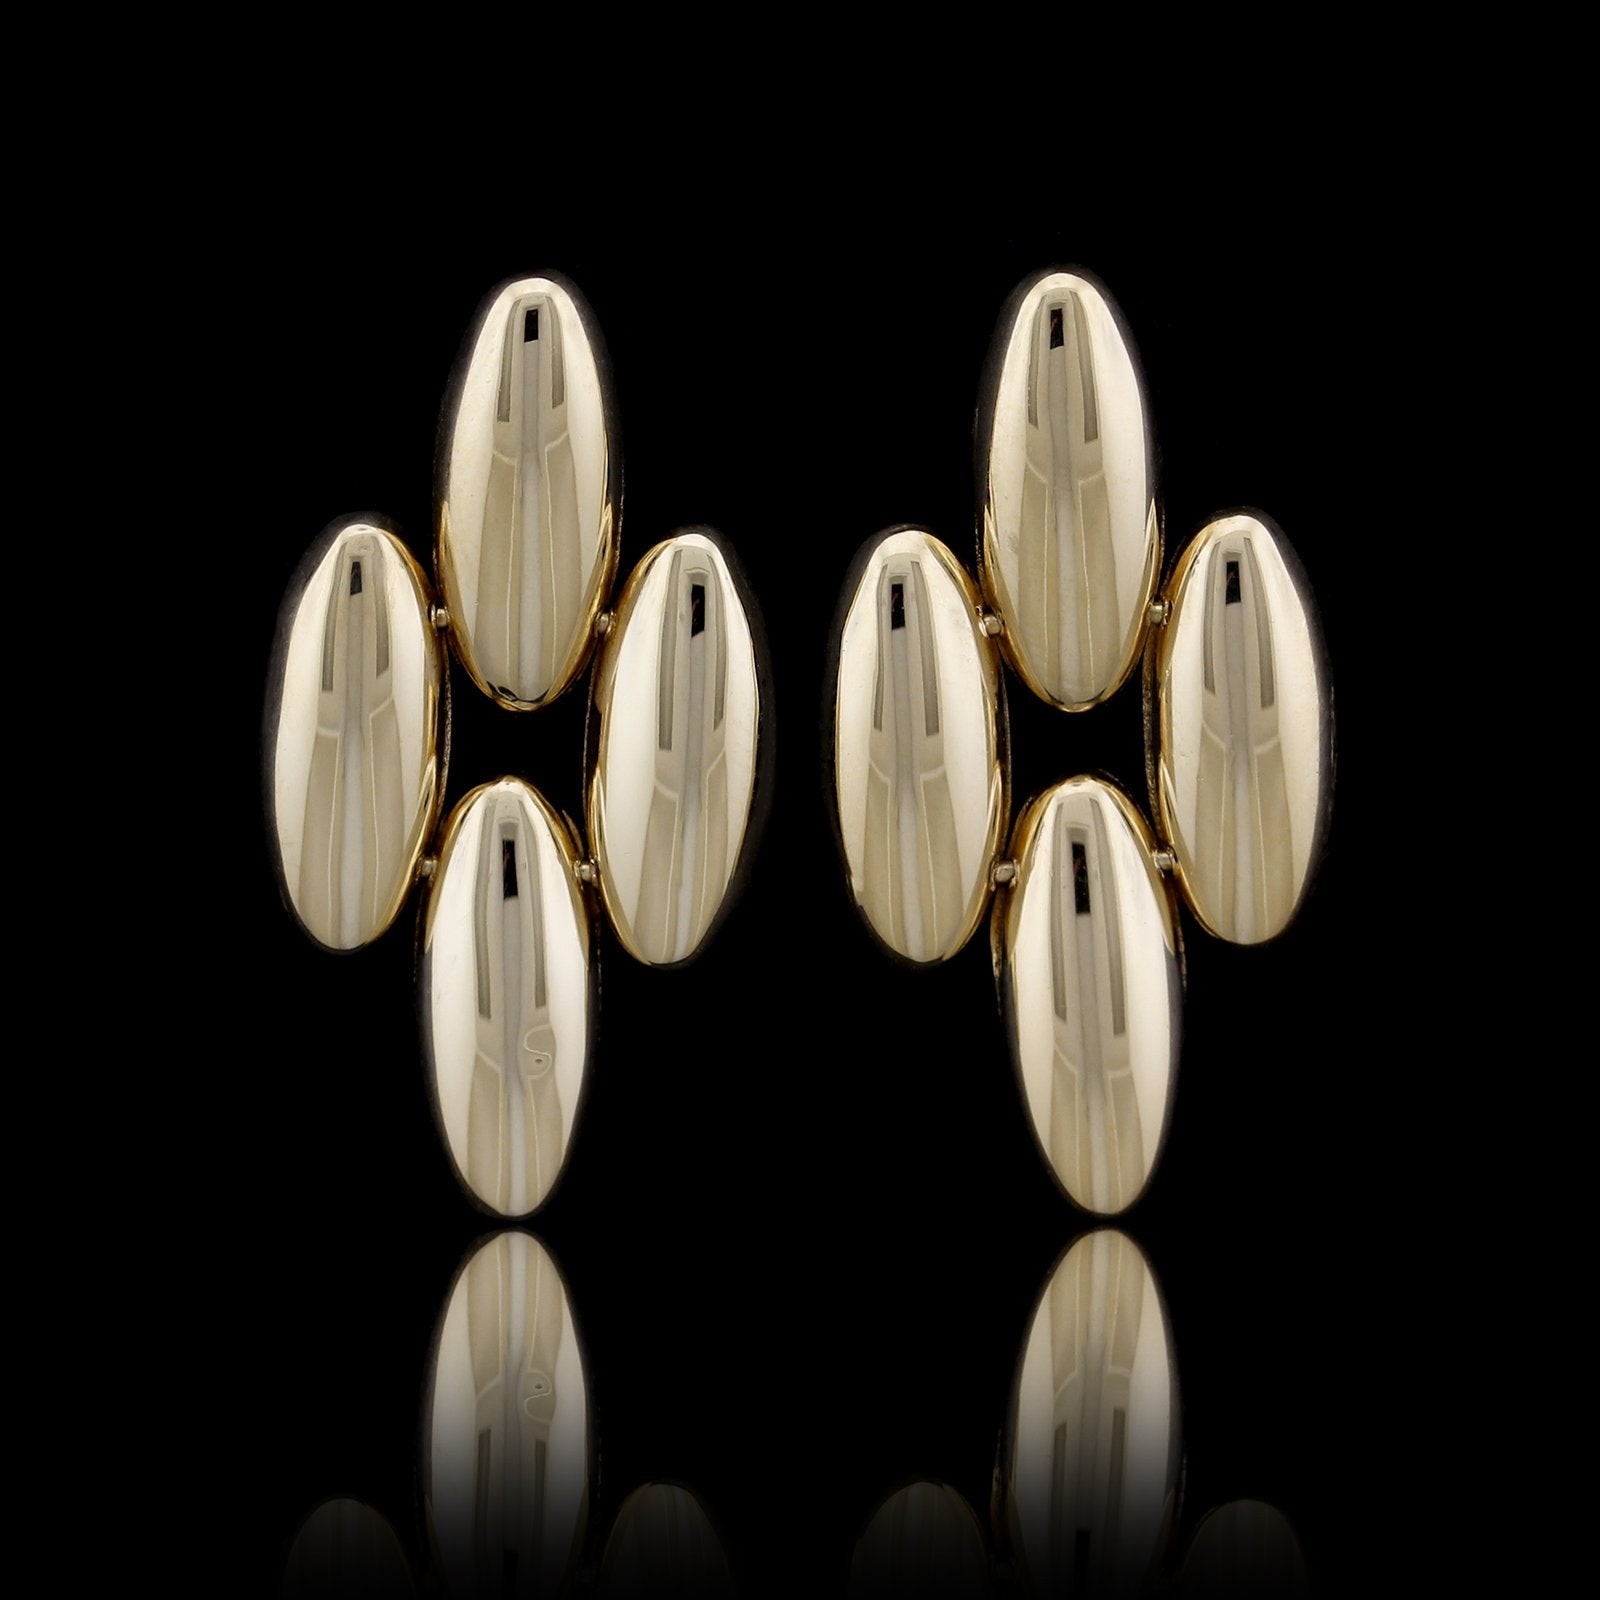 14K Yellow Gold Drop Earrings